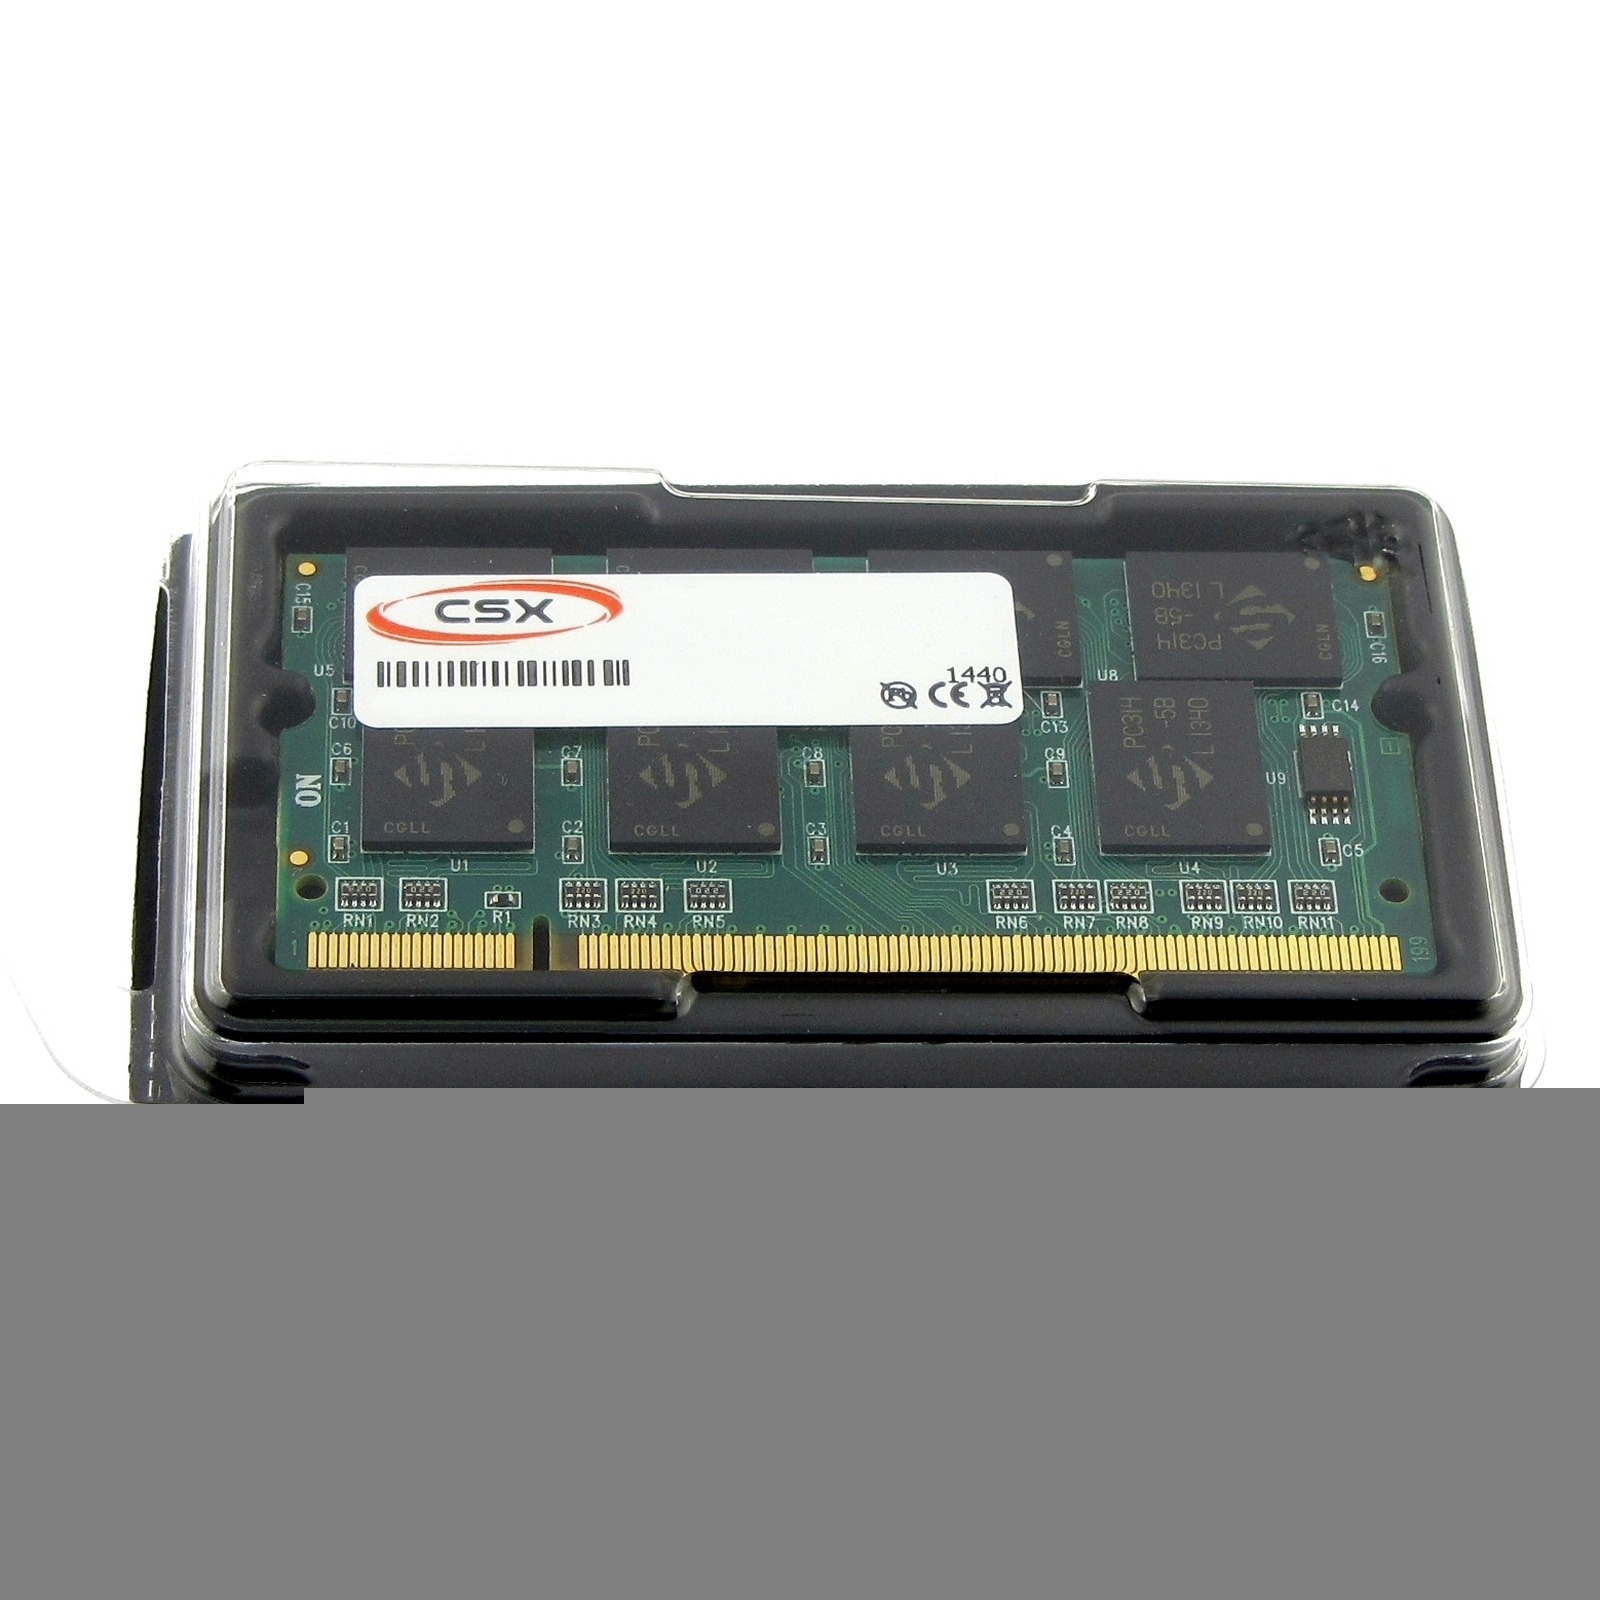 MTXTEC Arbeitsspeicher Satellite 1 1 RAM DDR GB TOSHIBA GB Notebook-Speicher M30X-143 für